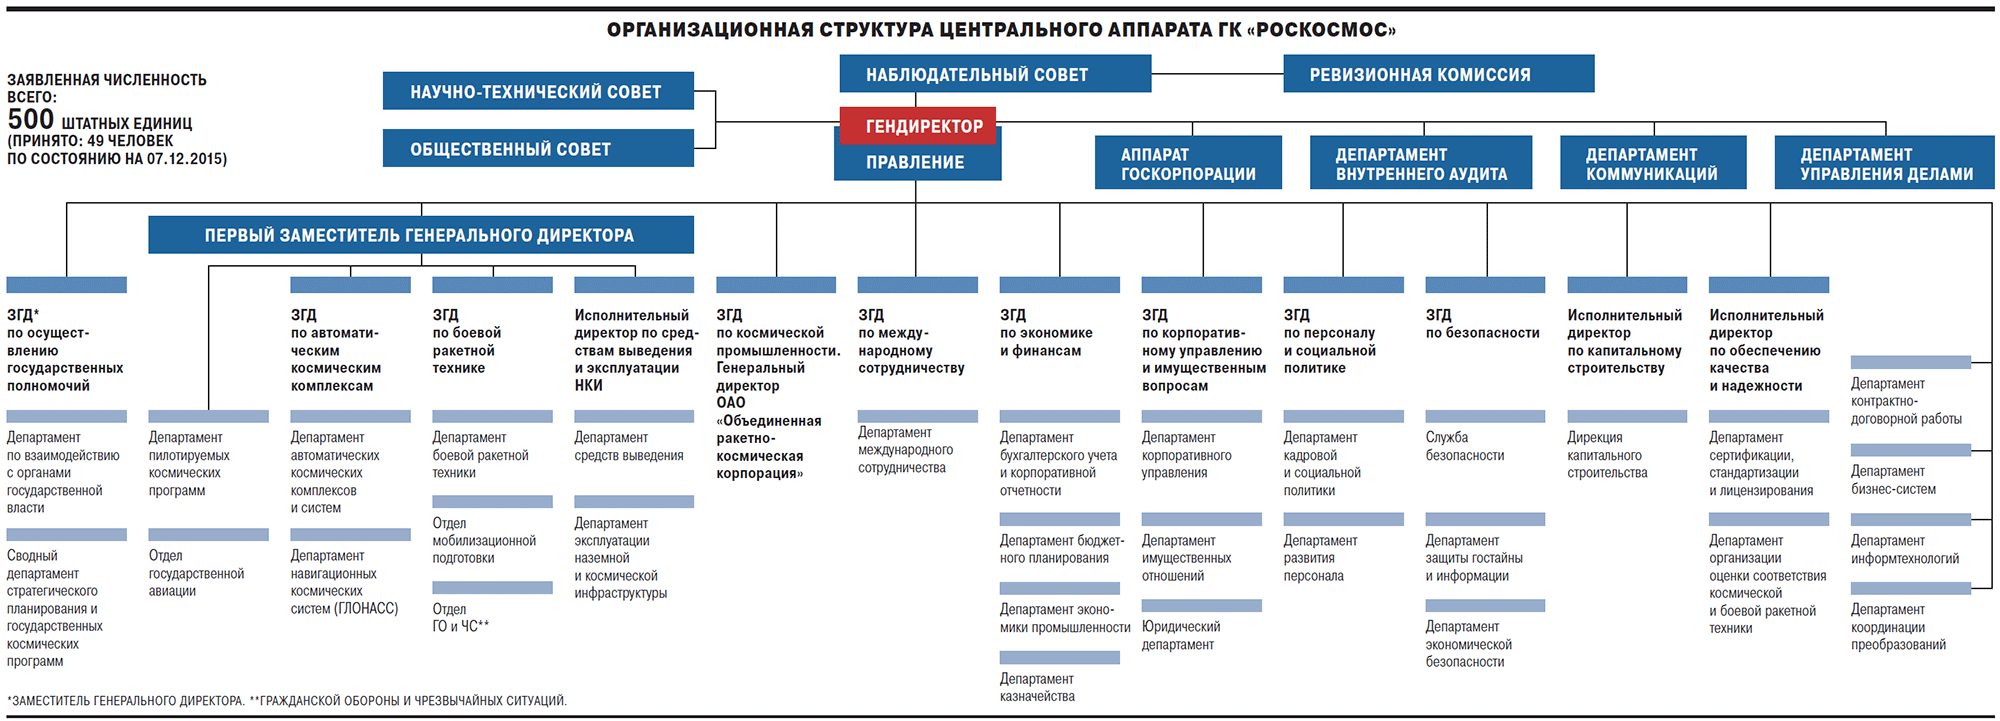 Организационная структура Роскосмос